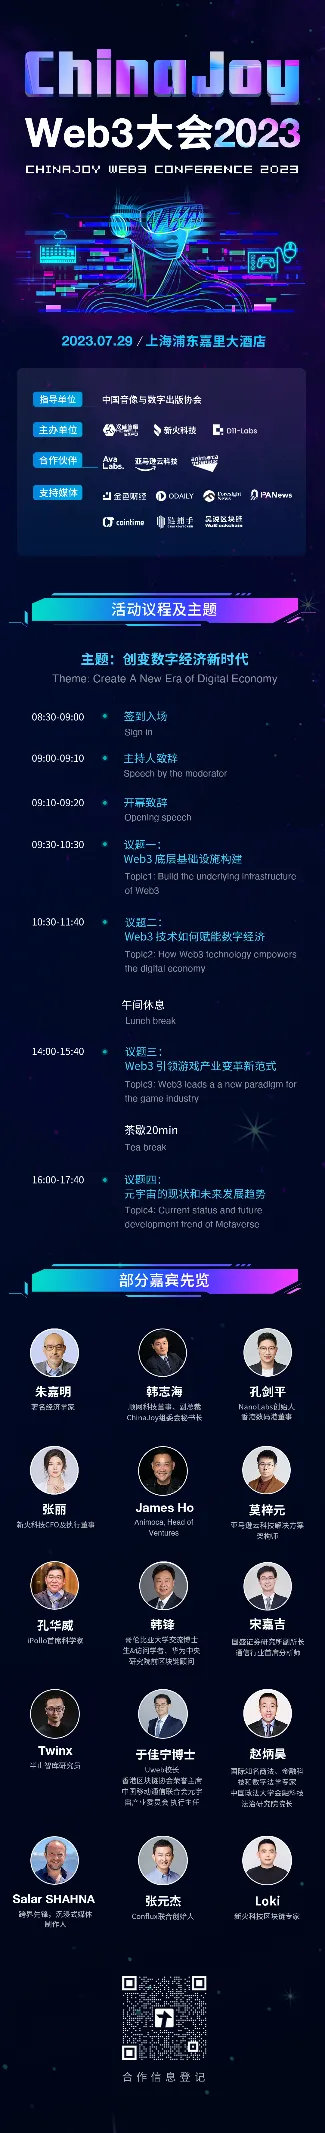 上海召开首届ChinaJoy Web3大会：会议聚焦探索发展区块链、Web3等数字新经济，推动元宇宙重大应用！